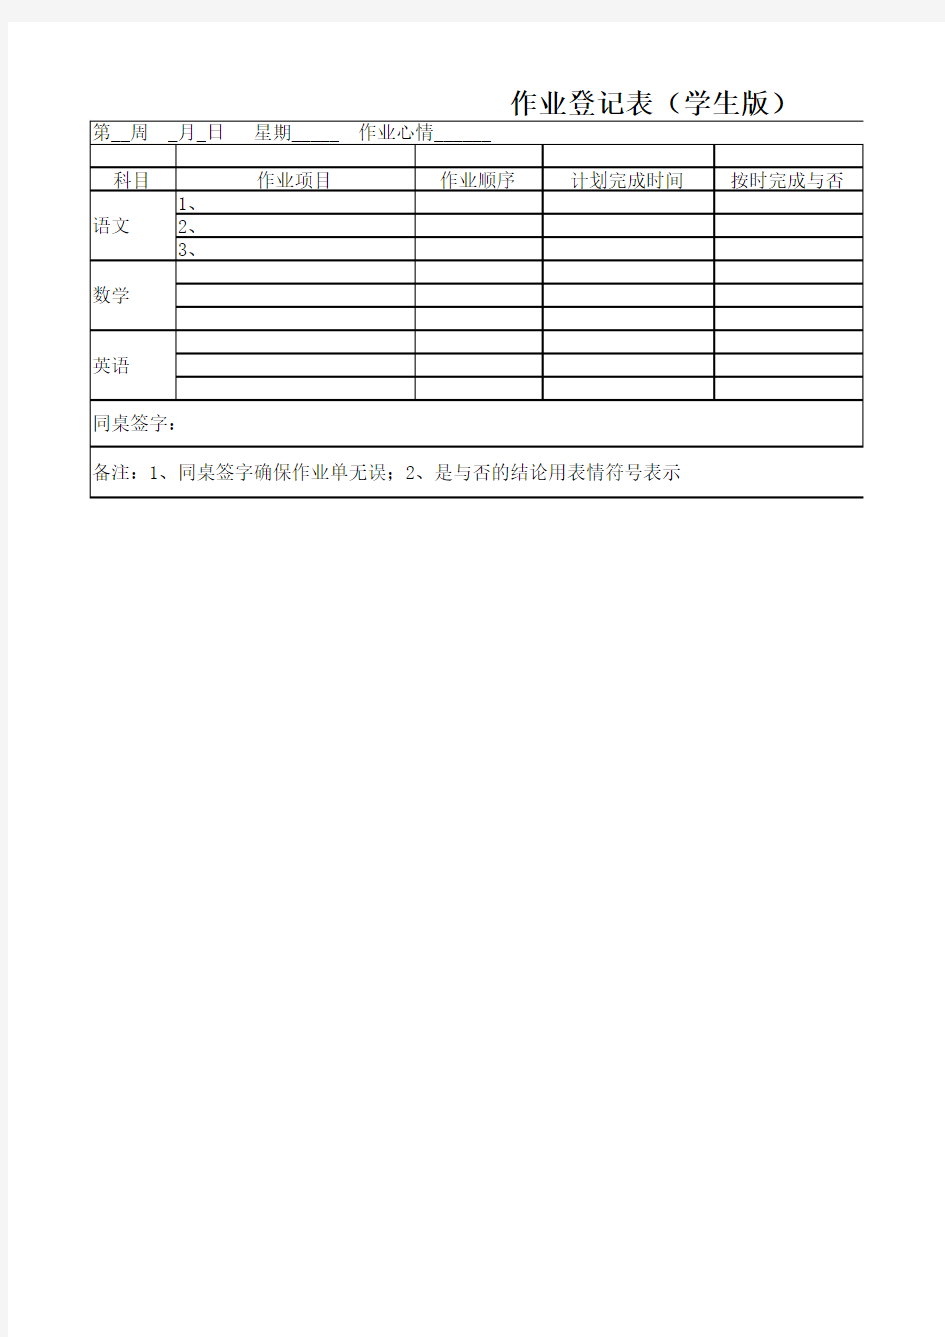 作业登记表(学生版)